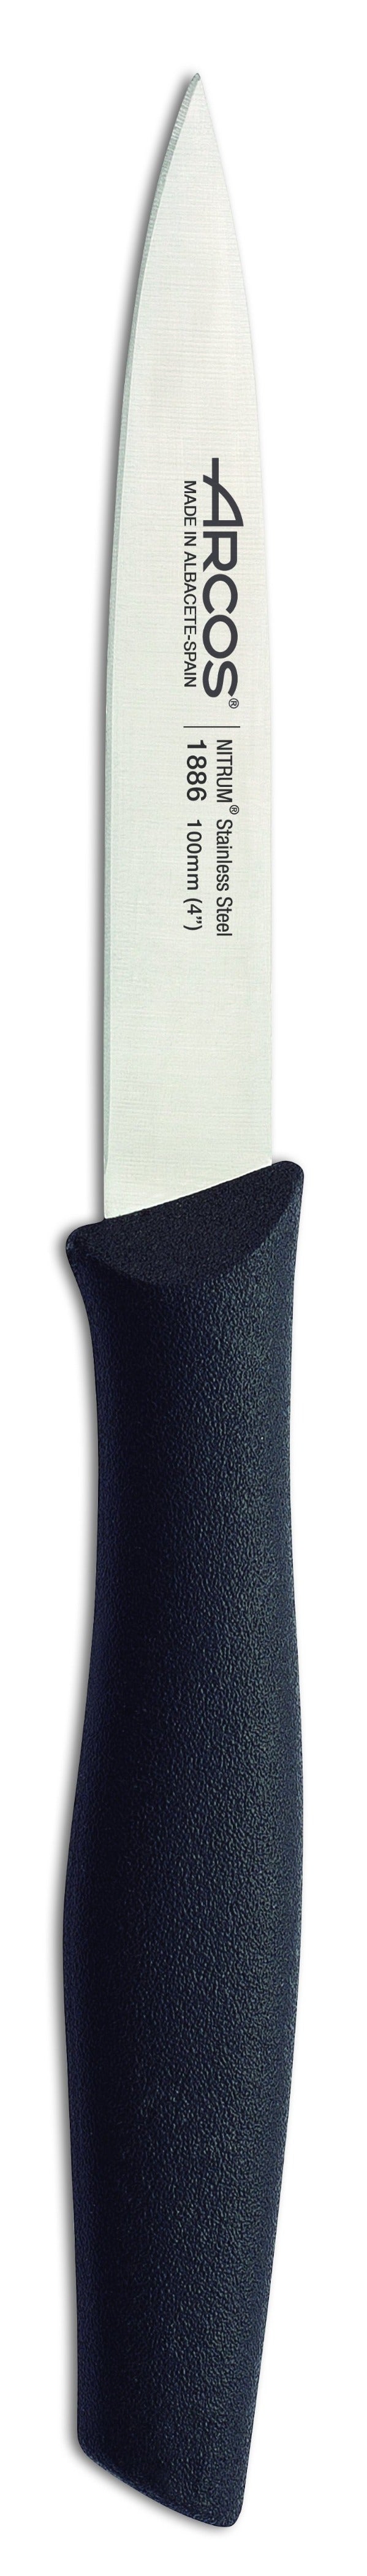 Cuchillo Pelador 10 cm - Nova ARCOS